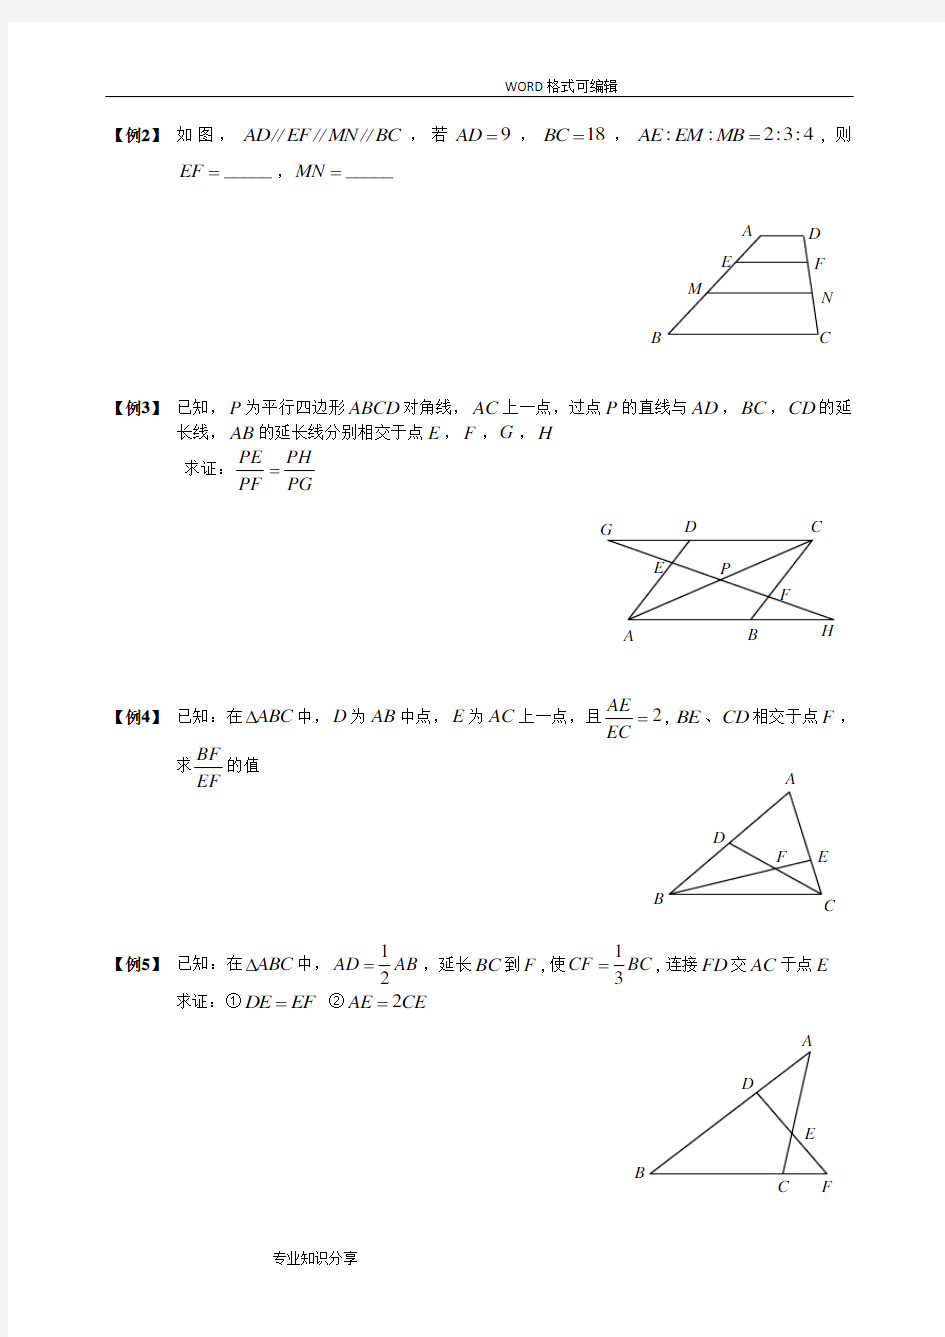 (完整版)相似三角形经典模型总结及例题分类